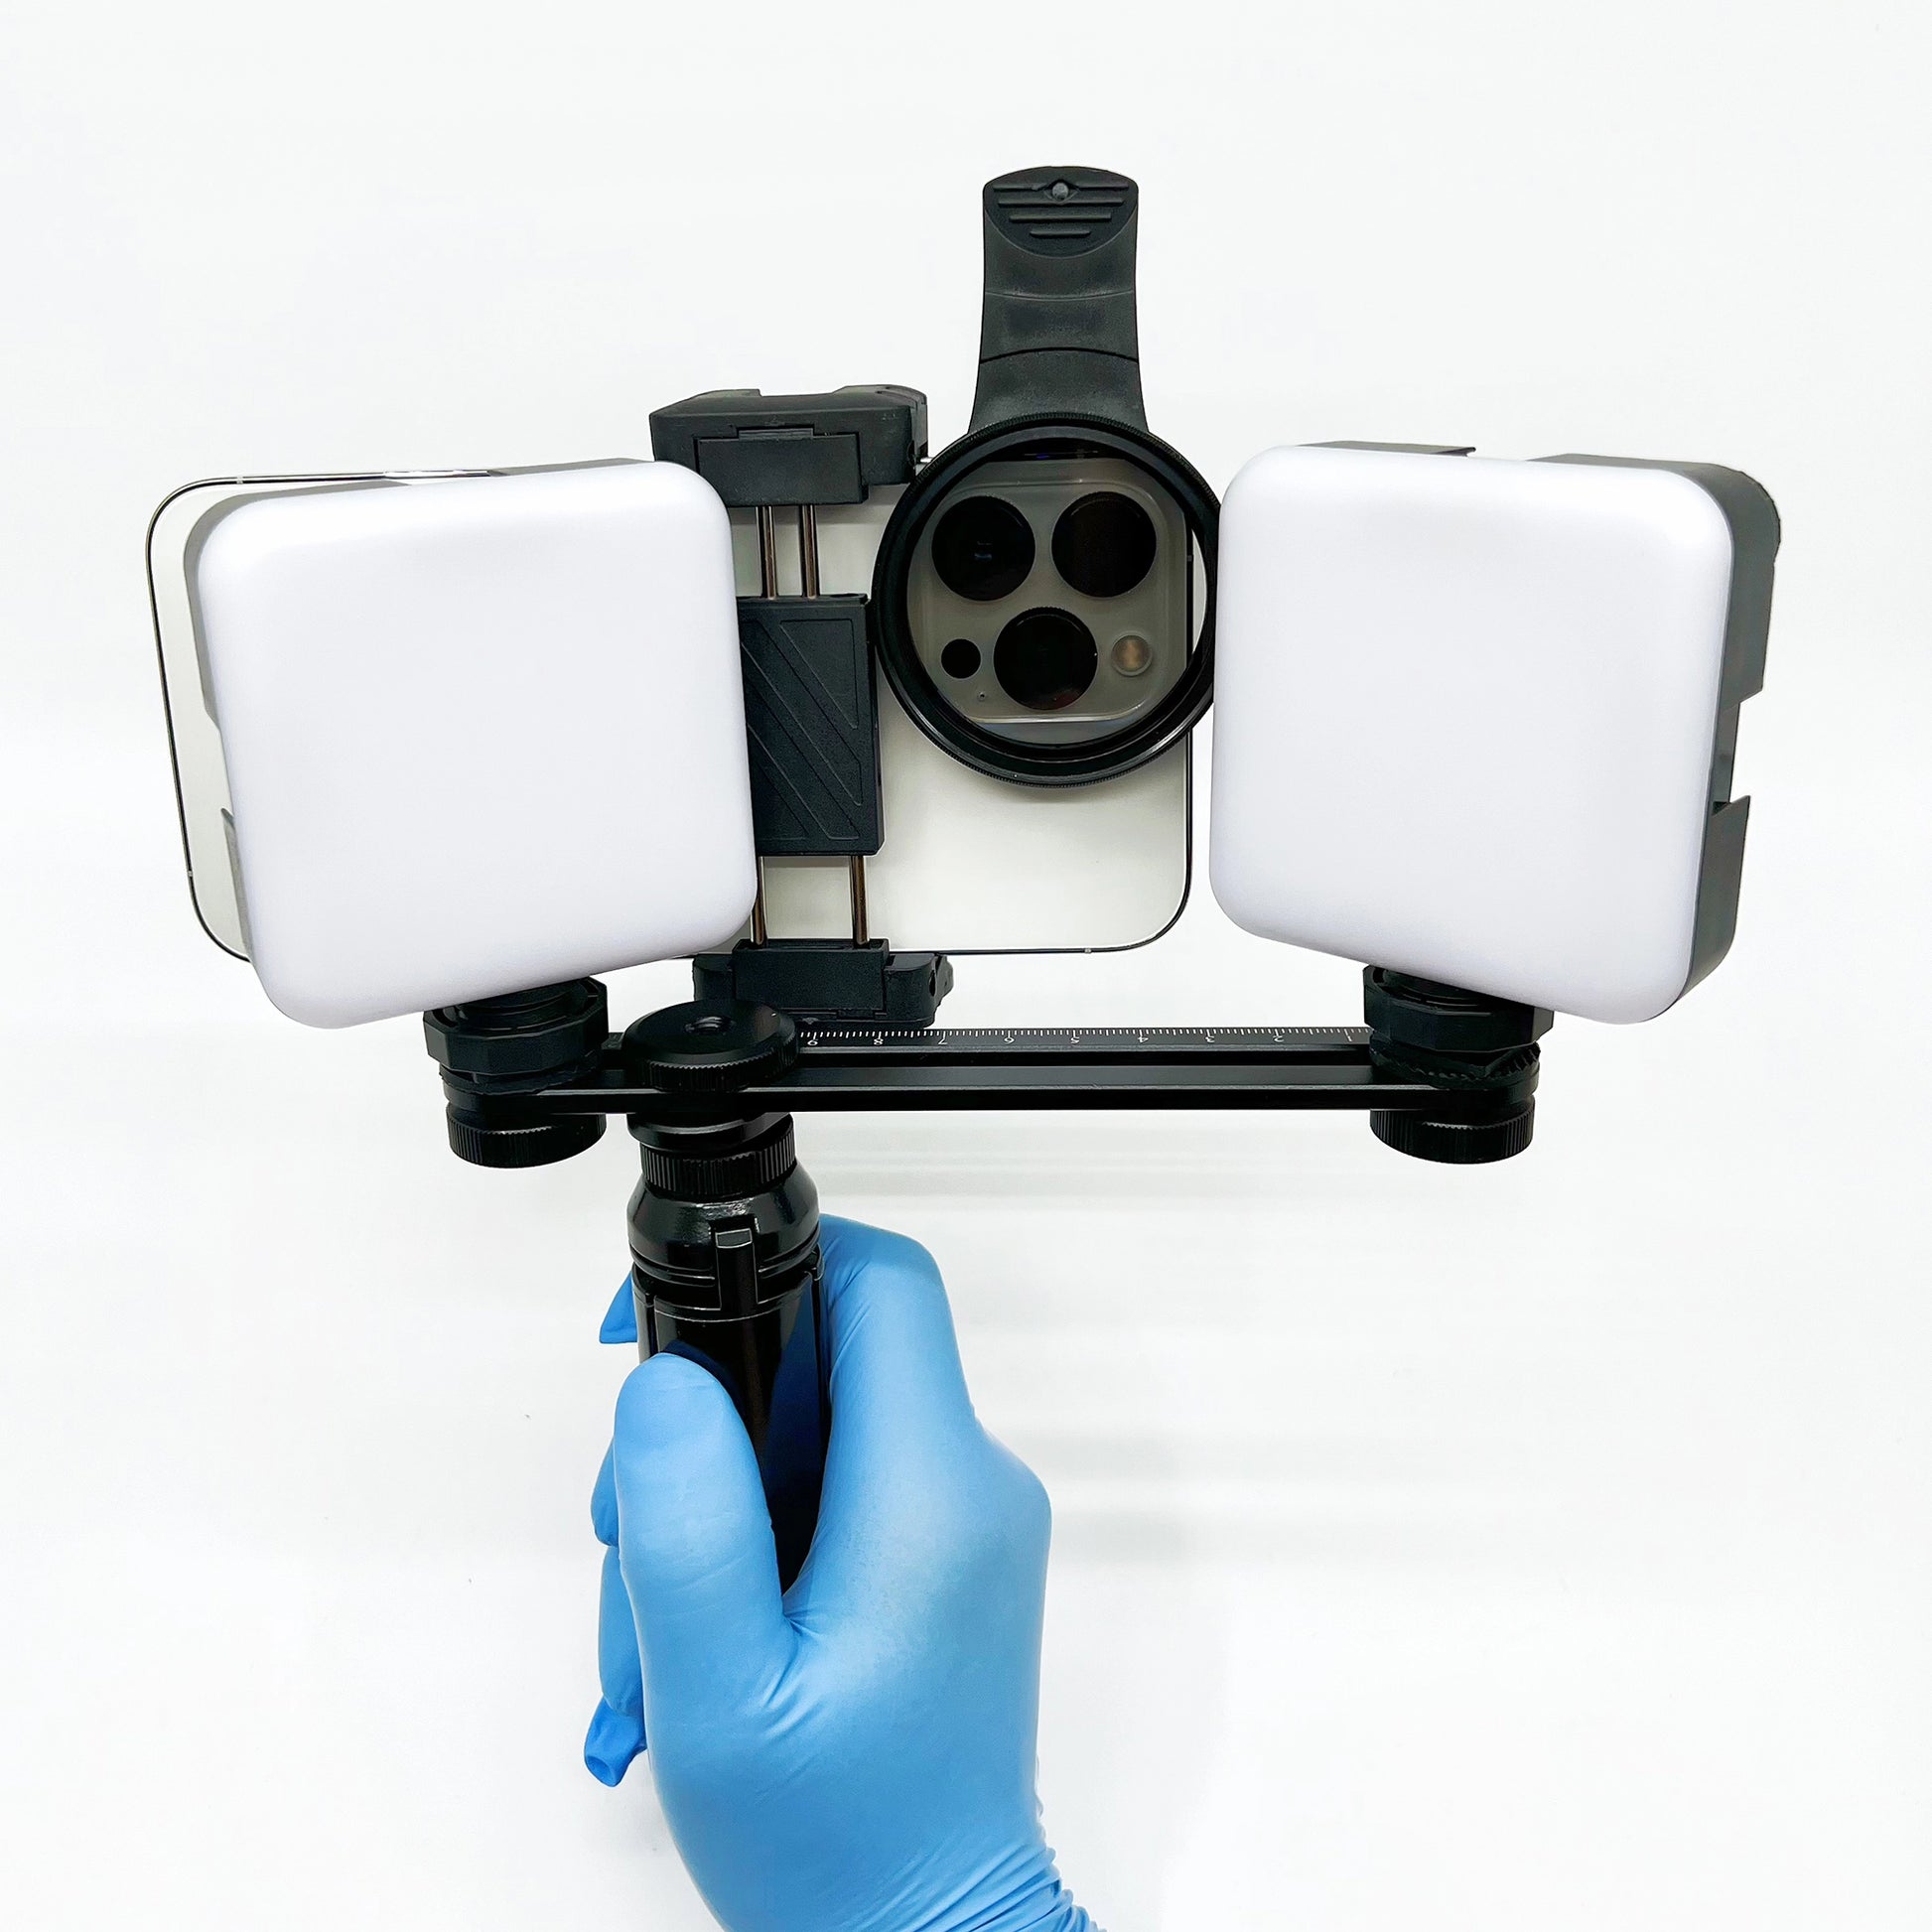 MK-023 Anillo de luz para teléfono móvil para odontología. foto y video  dental – Dental-photo